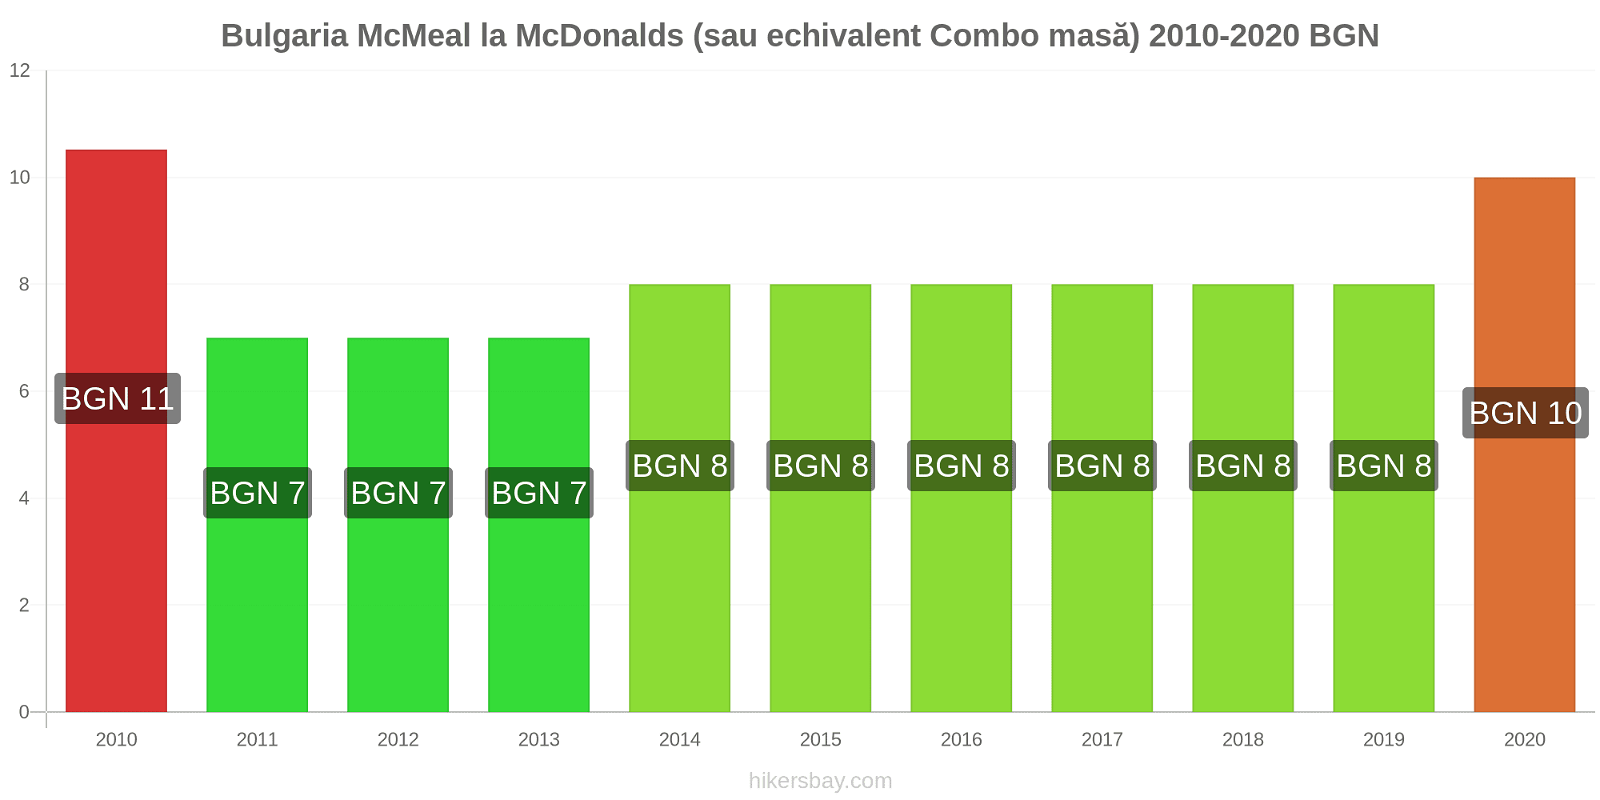 Bulgaria modificări de preț McMeal la McDonalds (sau echivalent Combo masă) hikersbay.com